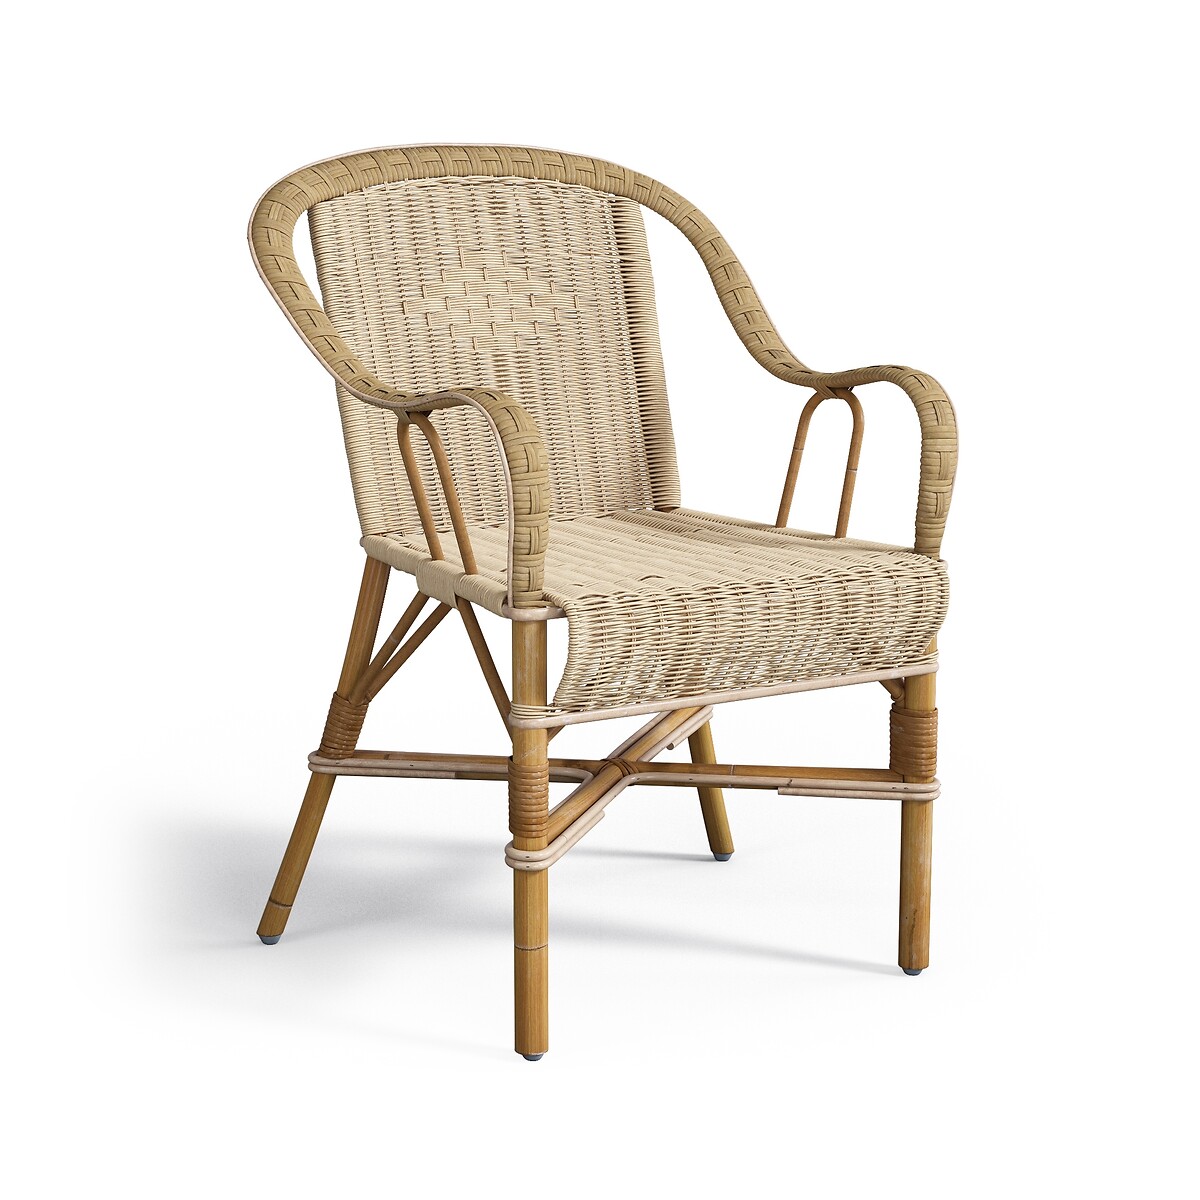 Кресло садовое KOK из ротанга Marcel единый размер бежевый кресло садовое из стали и полимера sabby единый размер бежевый